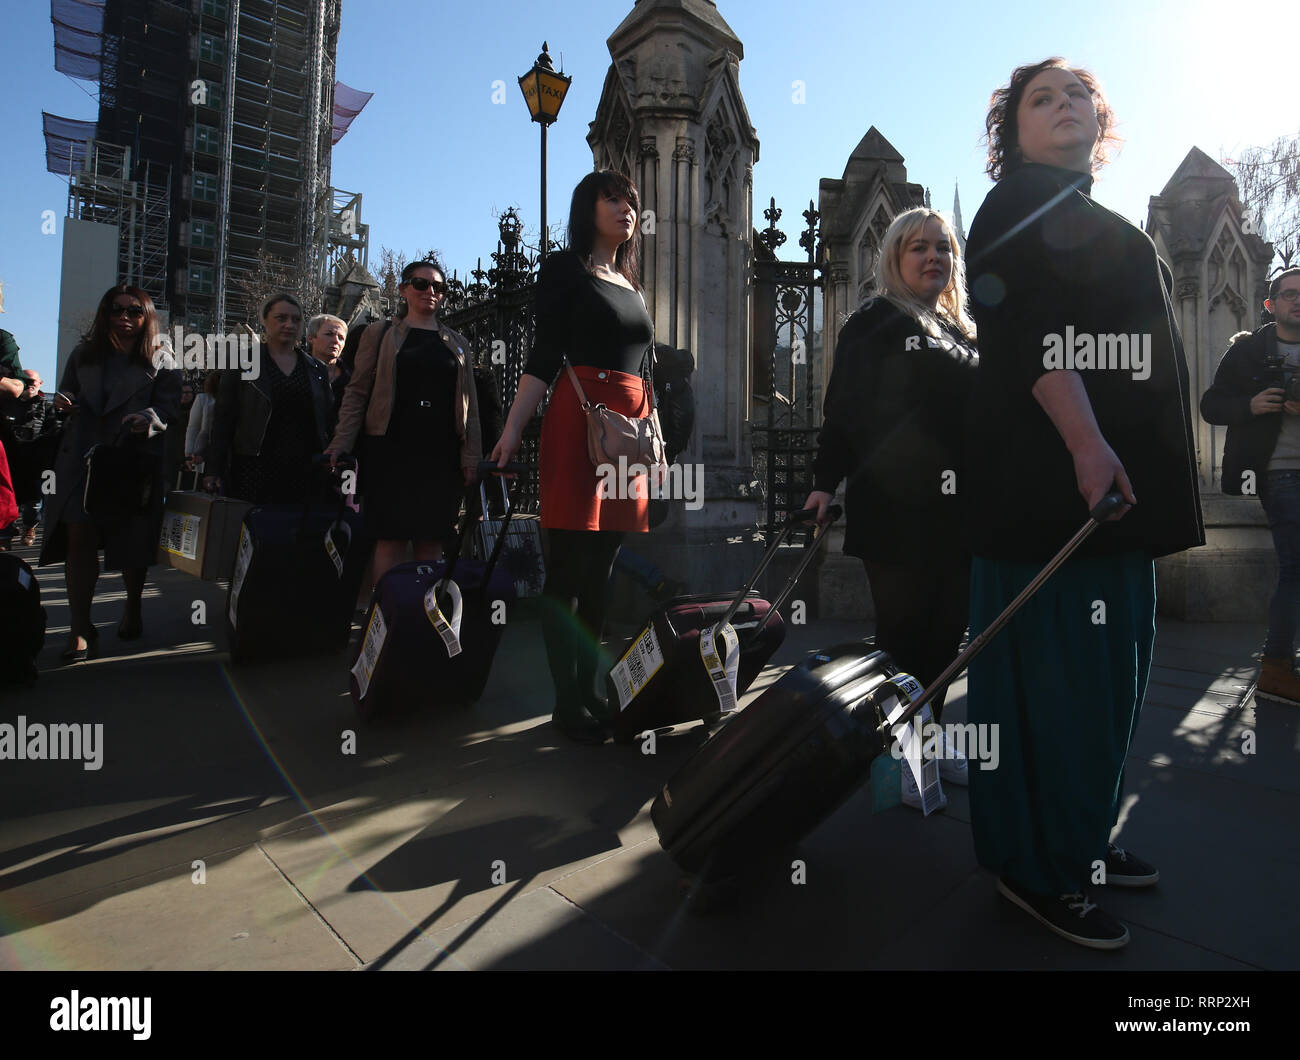 Derry Girls Cast Members Siobhan McSweeney (derecha) y Nicola Coughlan (segundo a la derecha) se unen a las mujeres afectadas por Irlanda del Norte las estrictas leyes sobre el aborto que llevan maletas, simbolizando las mujeres que viajan desde Irlanda del Norte a Gran Bretaña para terminaciones, cruzando el puente de Westminster exigiendo cambios legislativos. Foto de stock